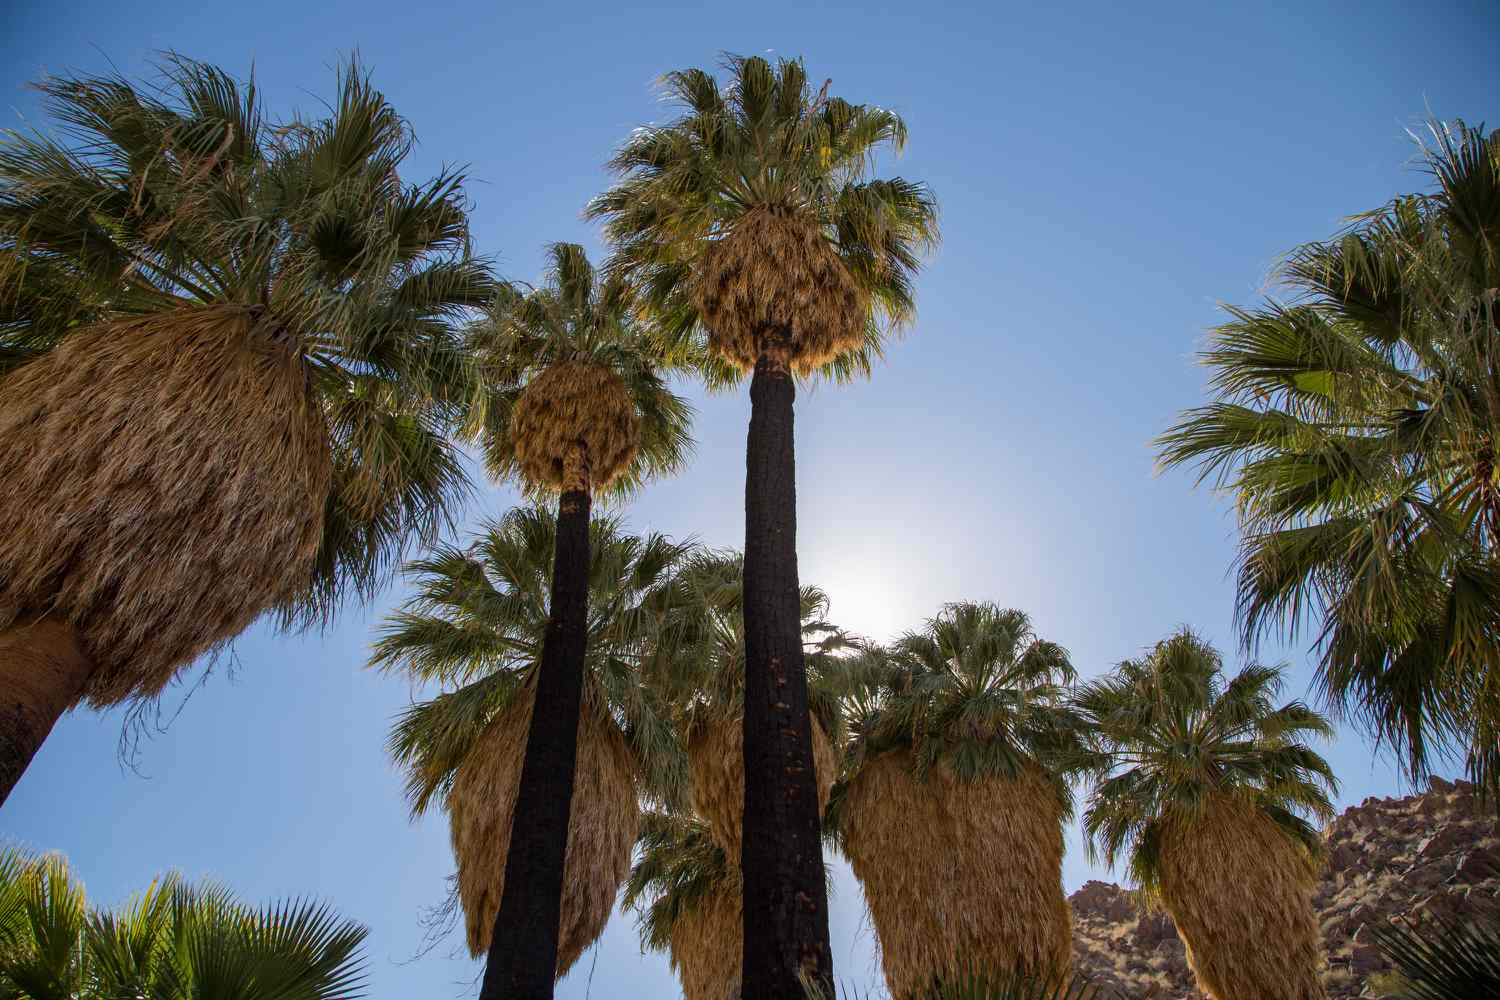 Kalifornische Fächerpalmen mit hohen dunklen Stämmen und großen fächerförmigen Wedeln vor blauem Himmel